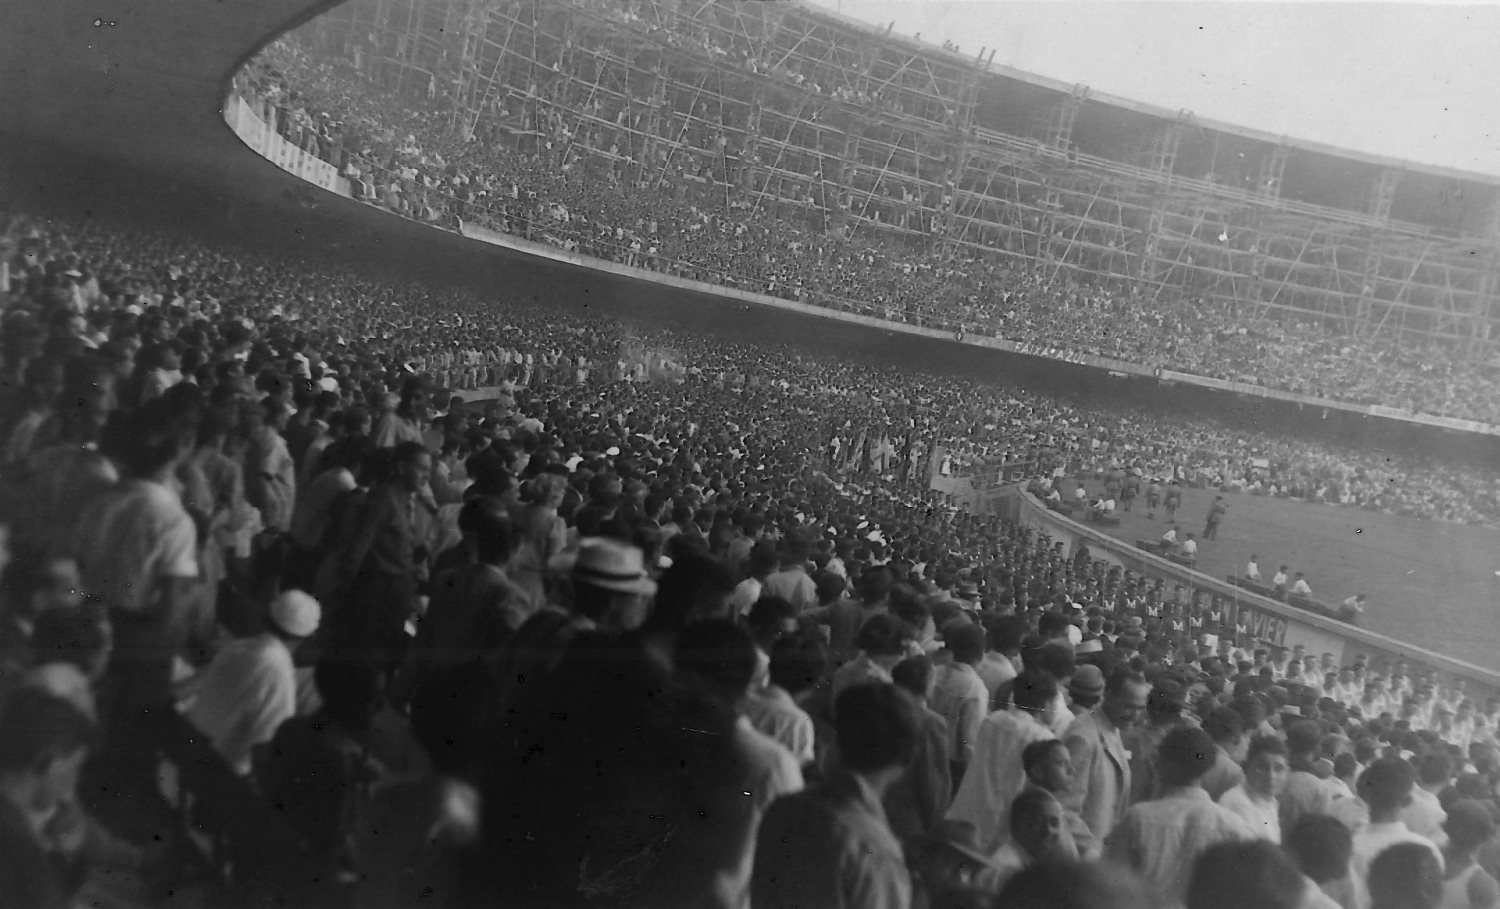 Maracanã in 1950